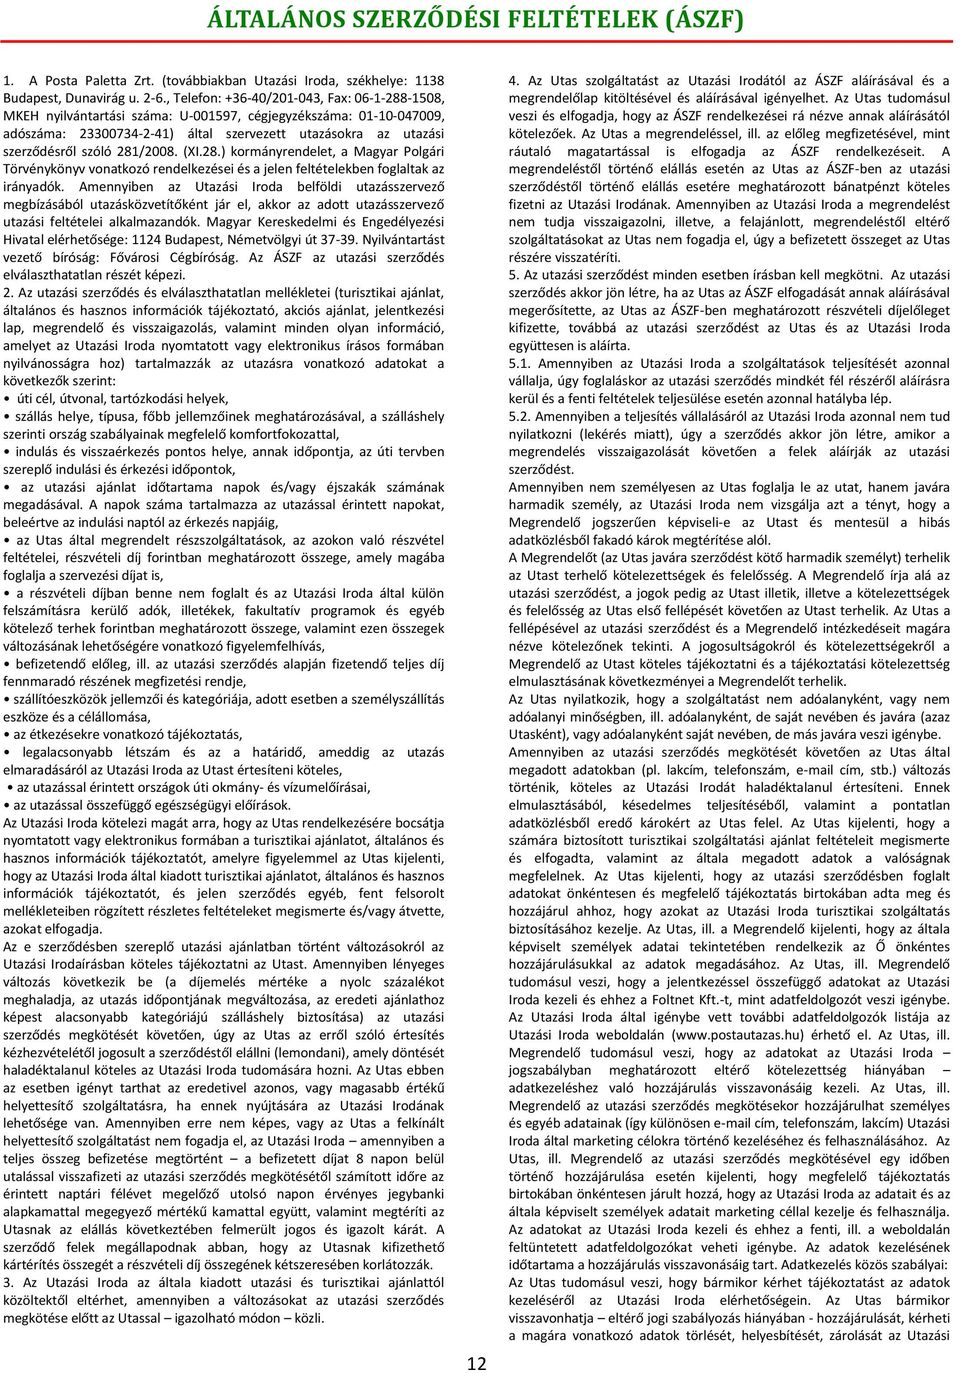 281/2008. (XI.28.) kormányrendelet, a Magyar Polgári Törvénykönyv vonatkozó rendelkezései és a jelen feltételekben foglaltak az irányadók.